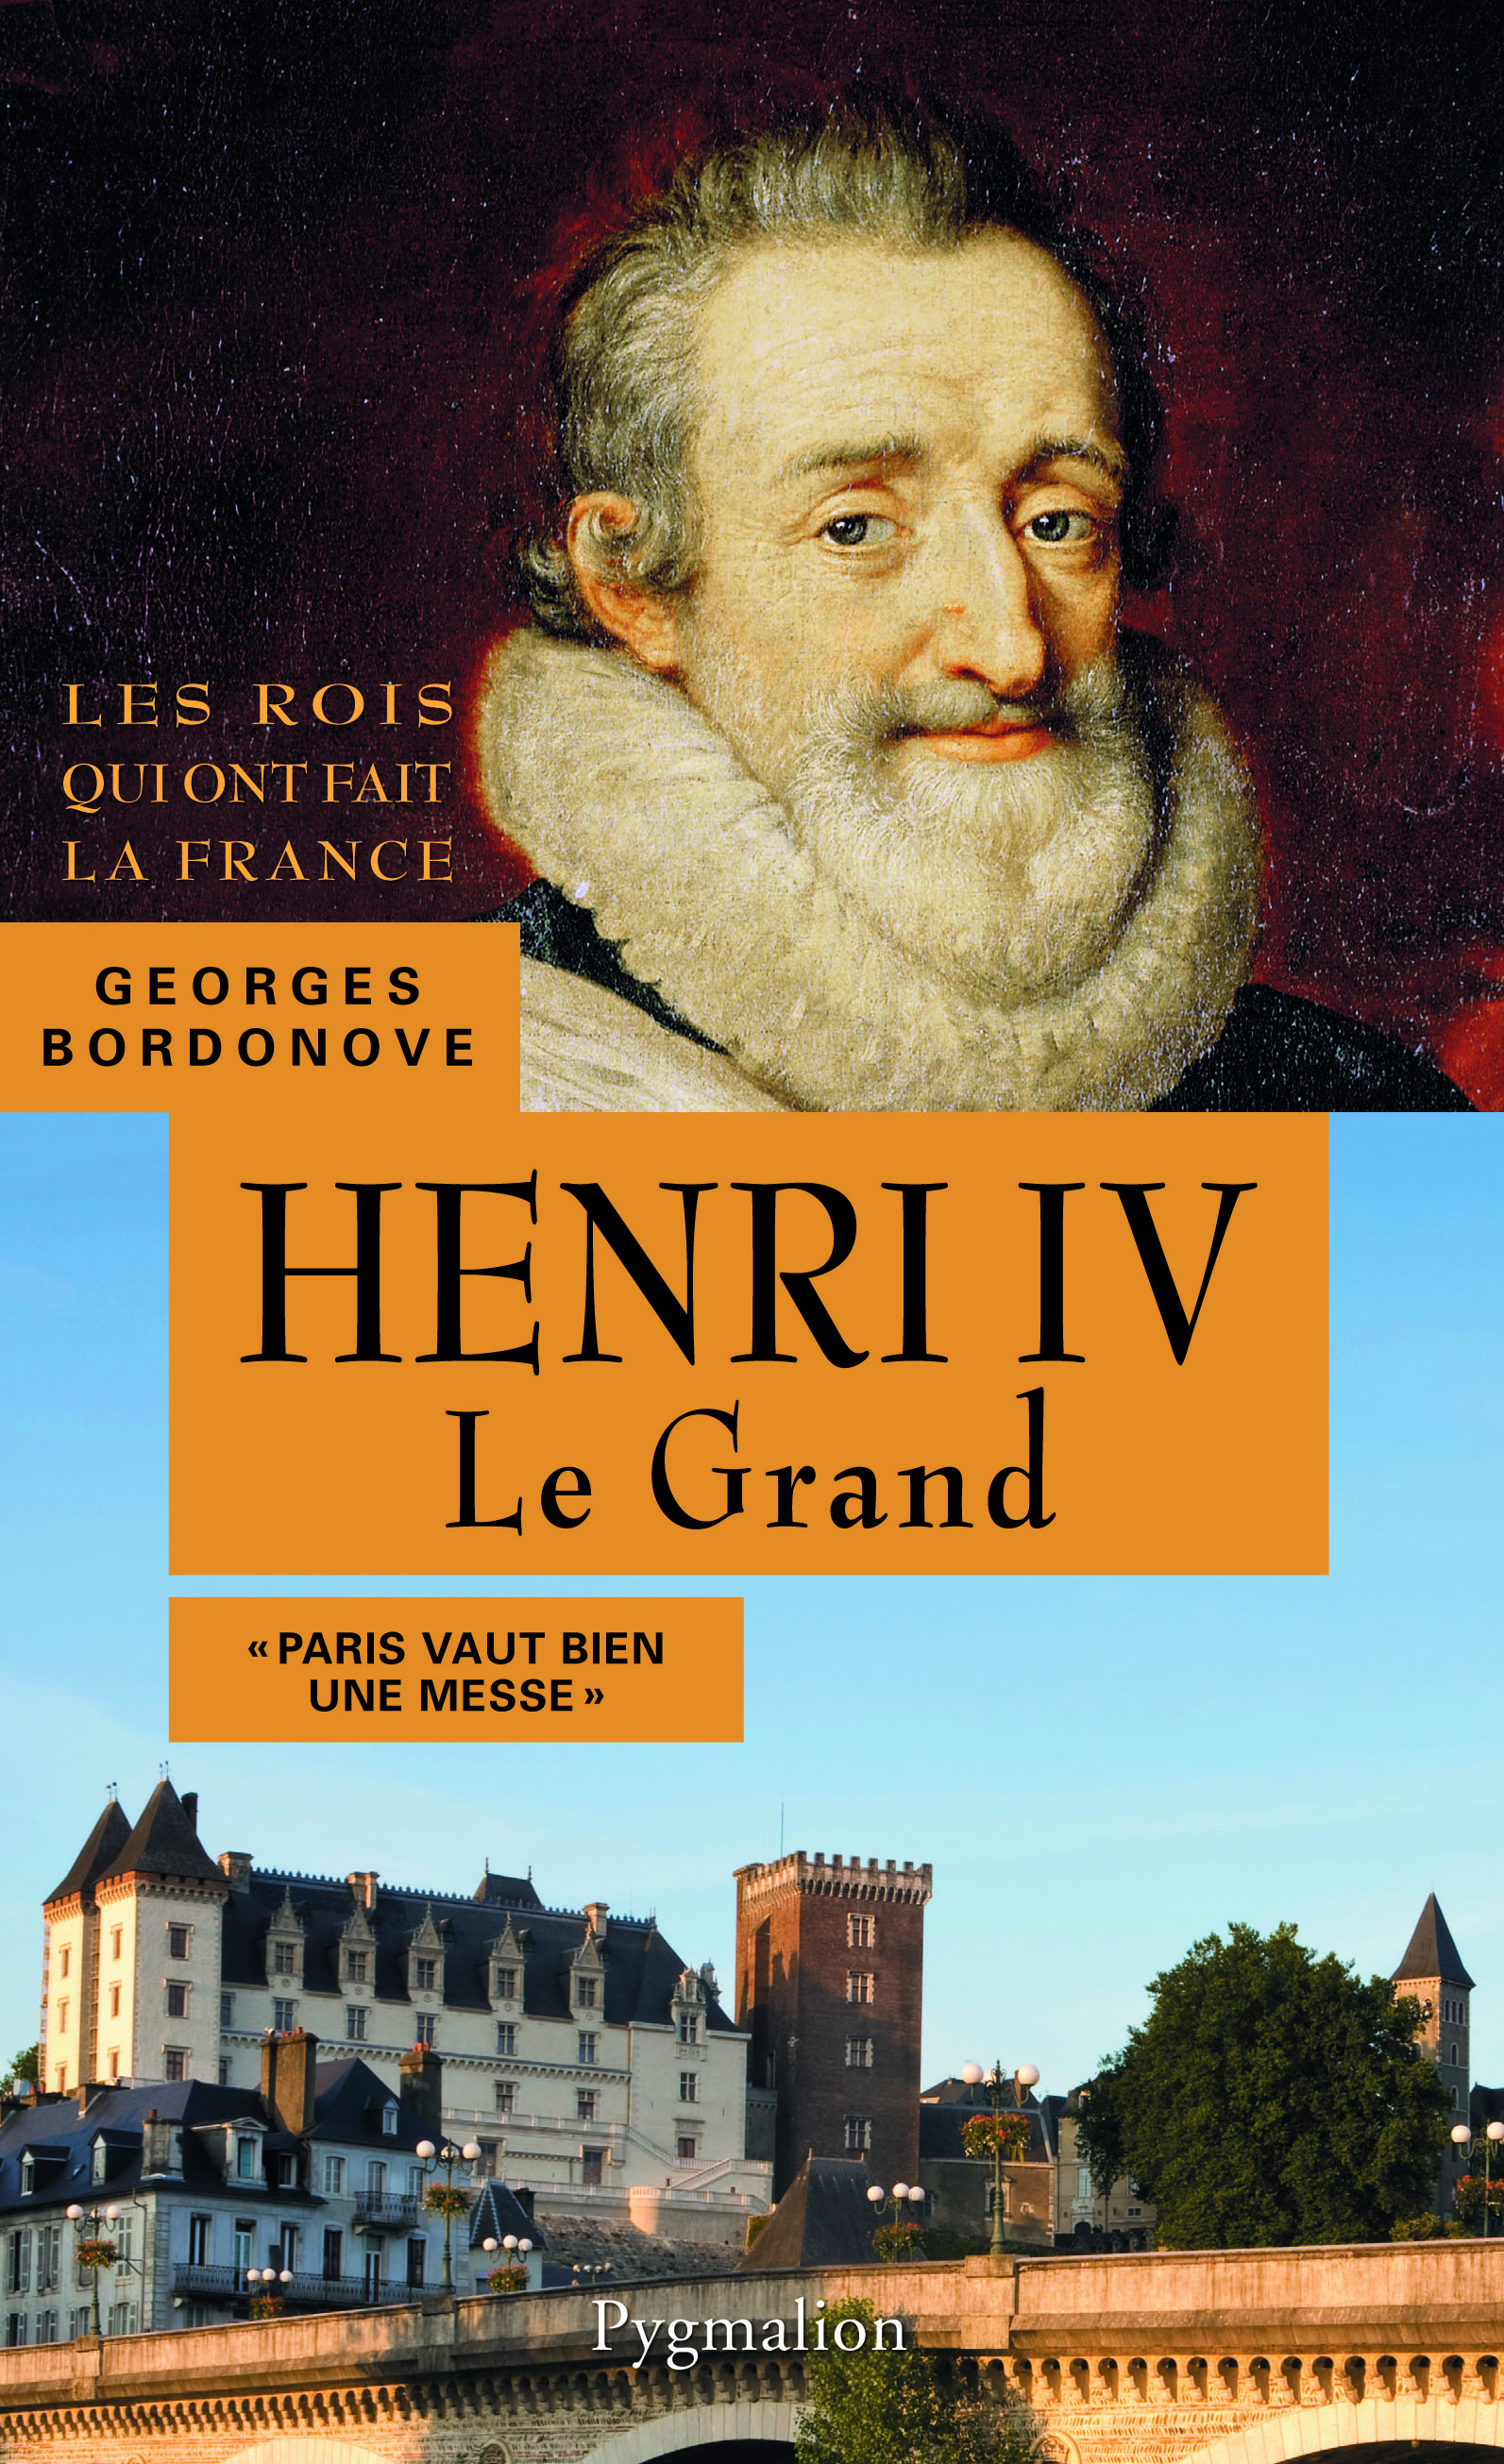 Henri IV Le Grand, 2013, 365 p.